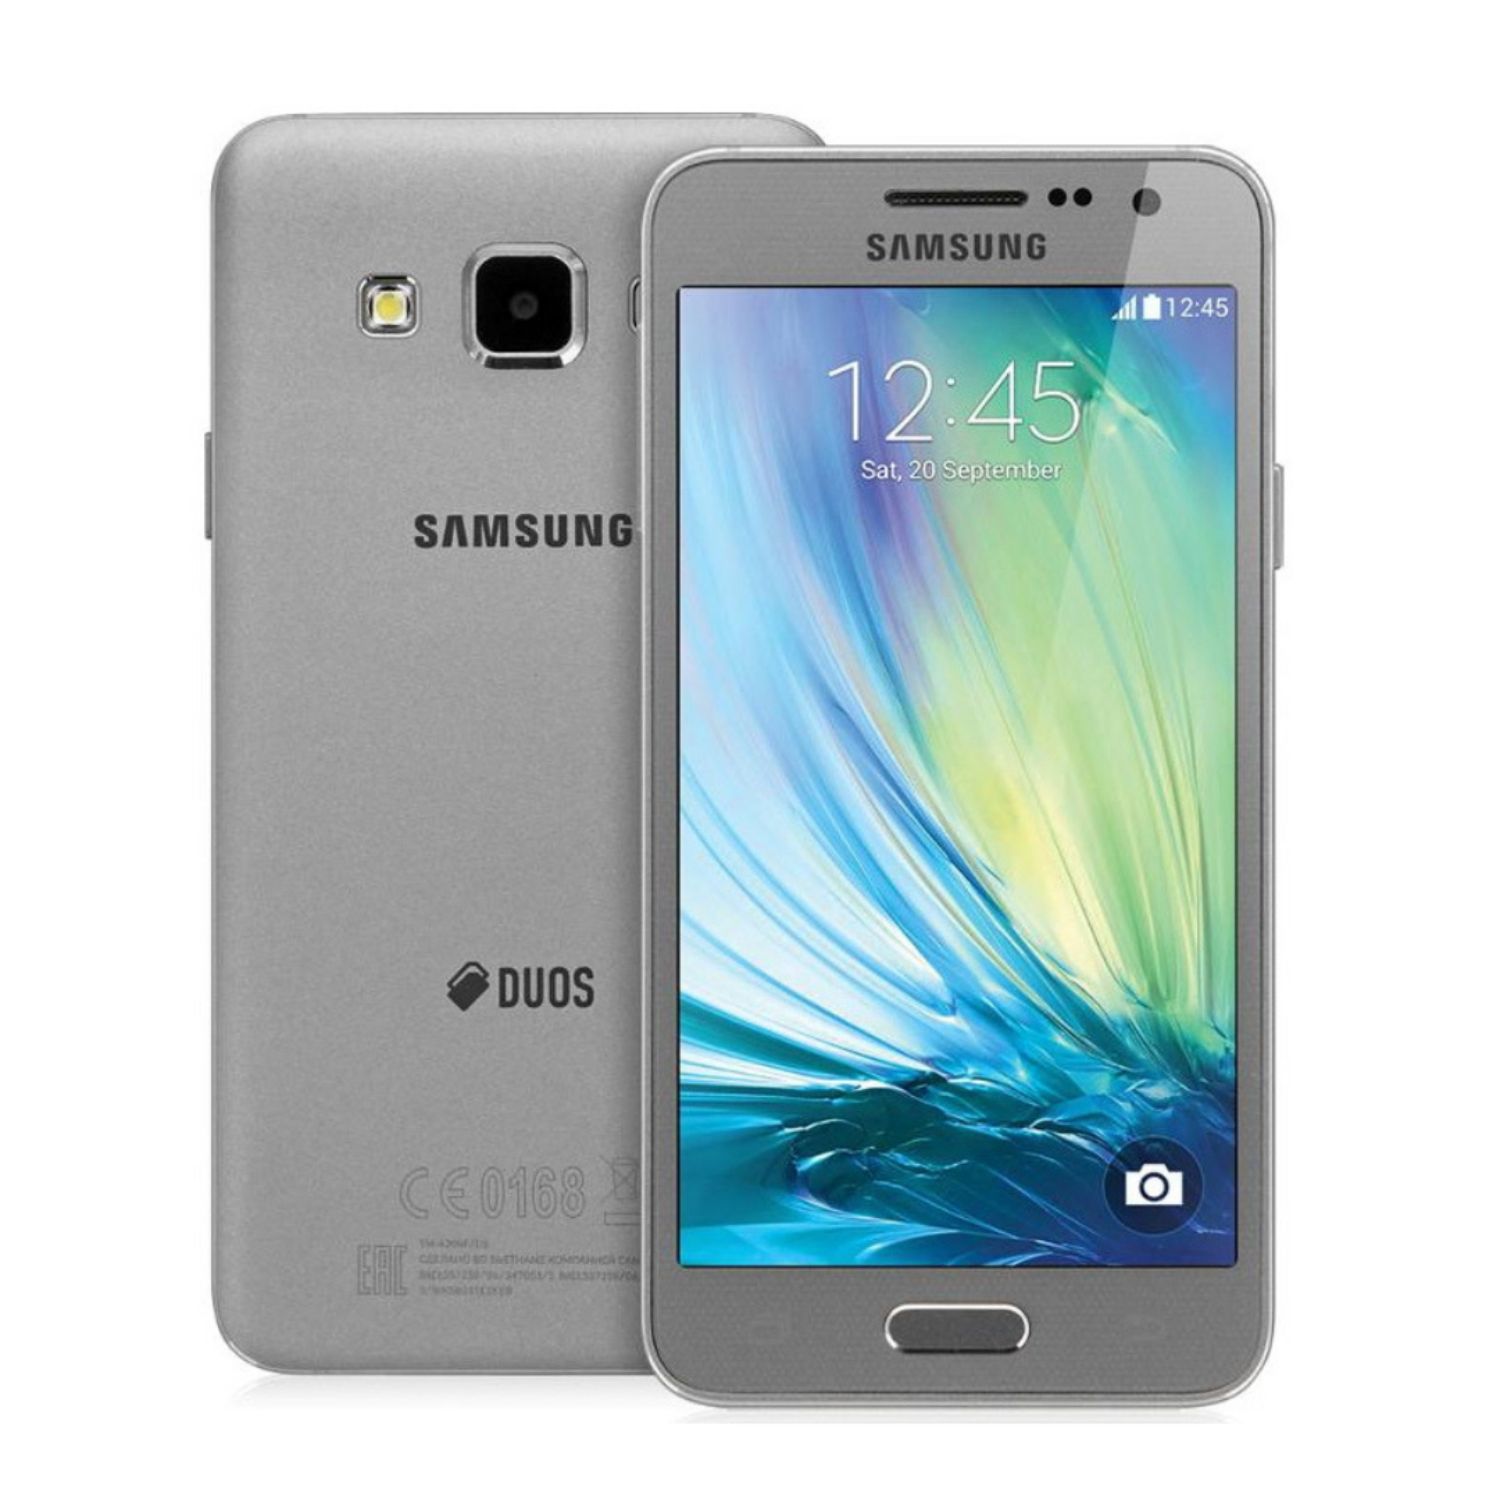 Galaxy gold 3. Samsung Galaxy a3. Samsung a300 Galaxy a3. Samsung a5 2014. Samsung a3 2015.